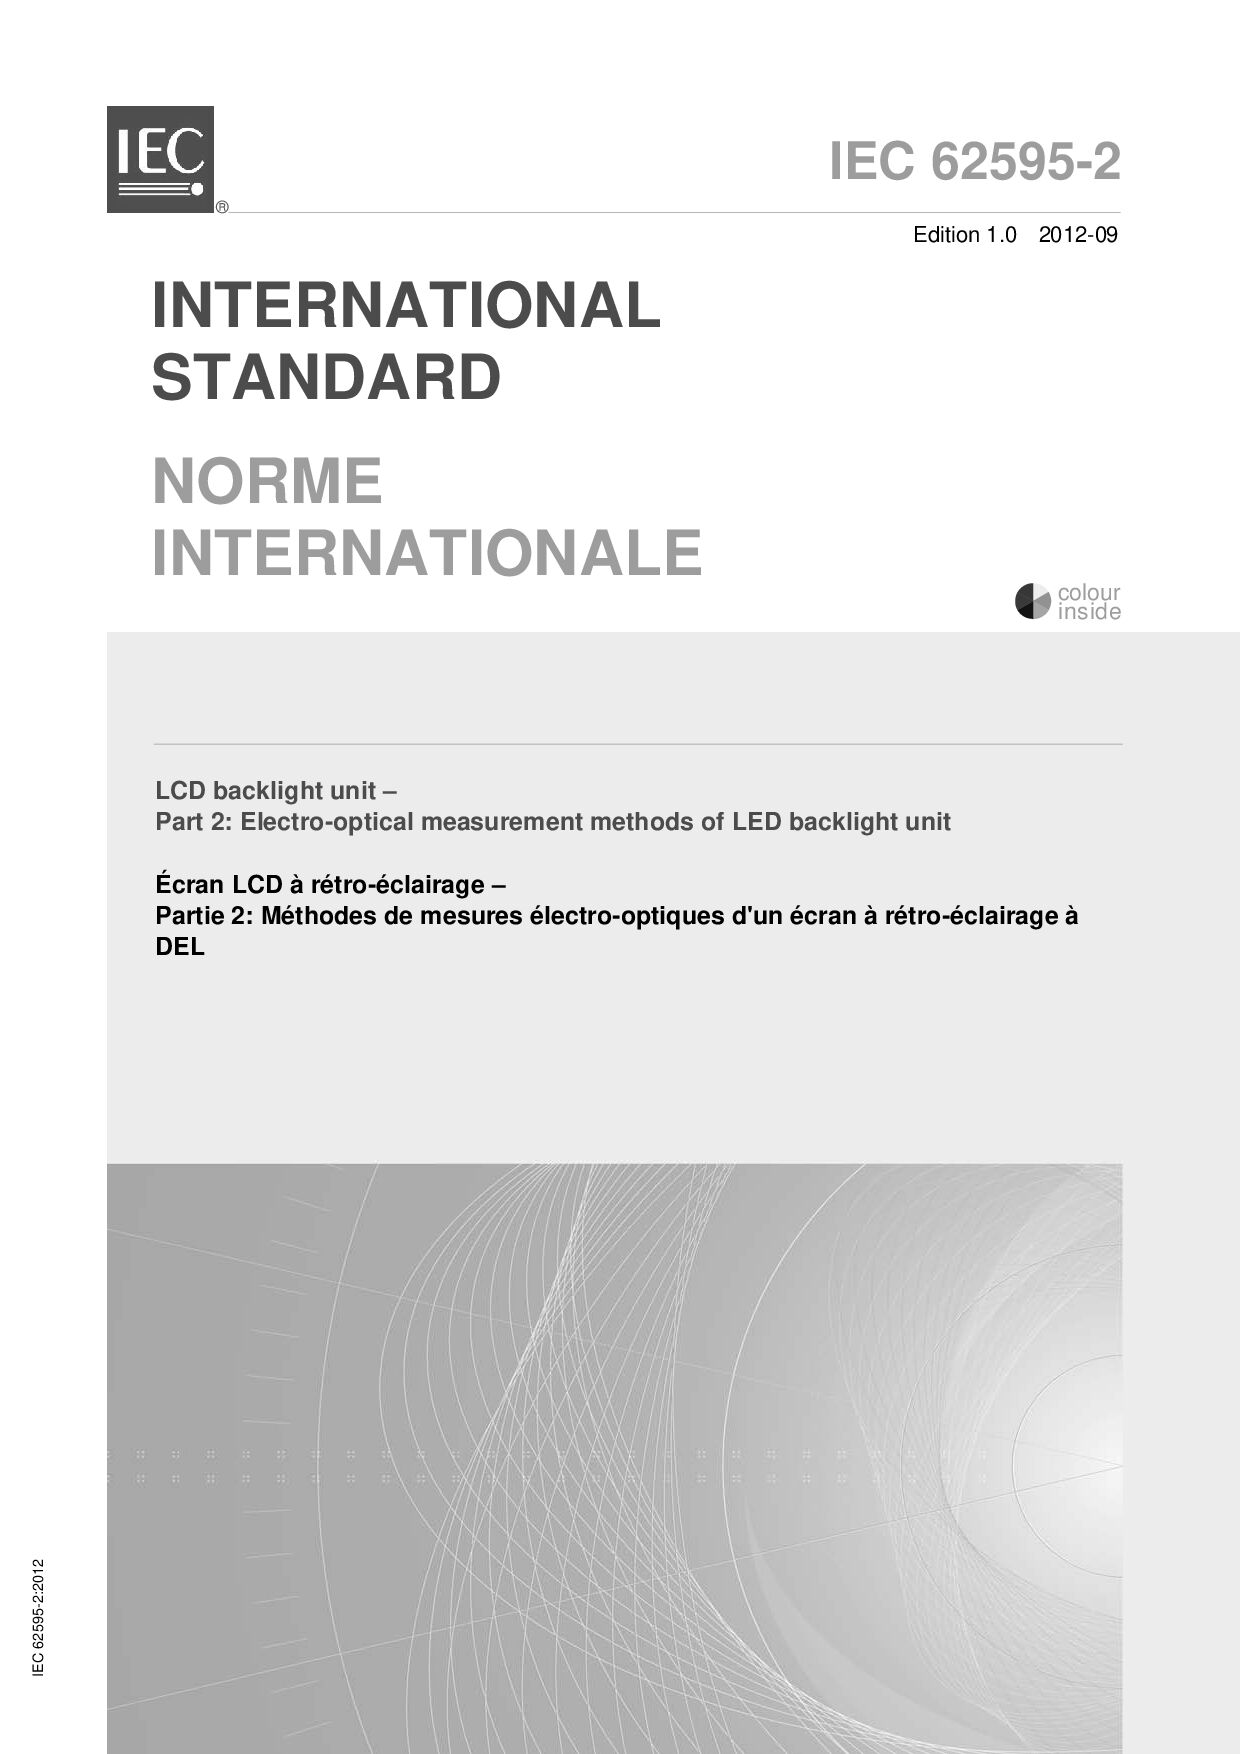 IEC 62595-2:2012